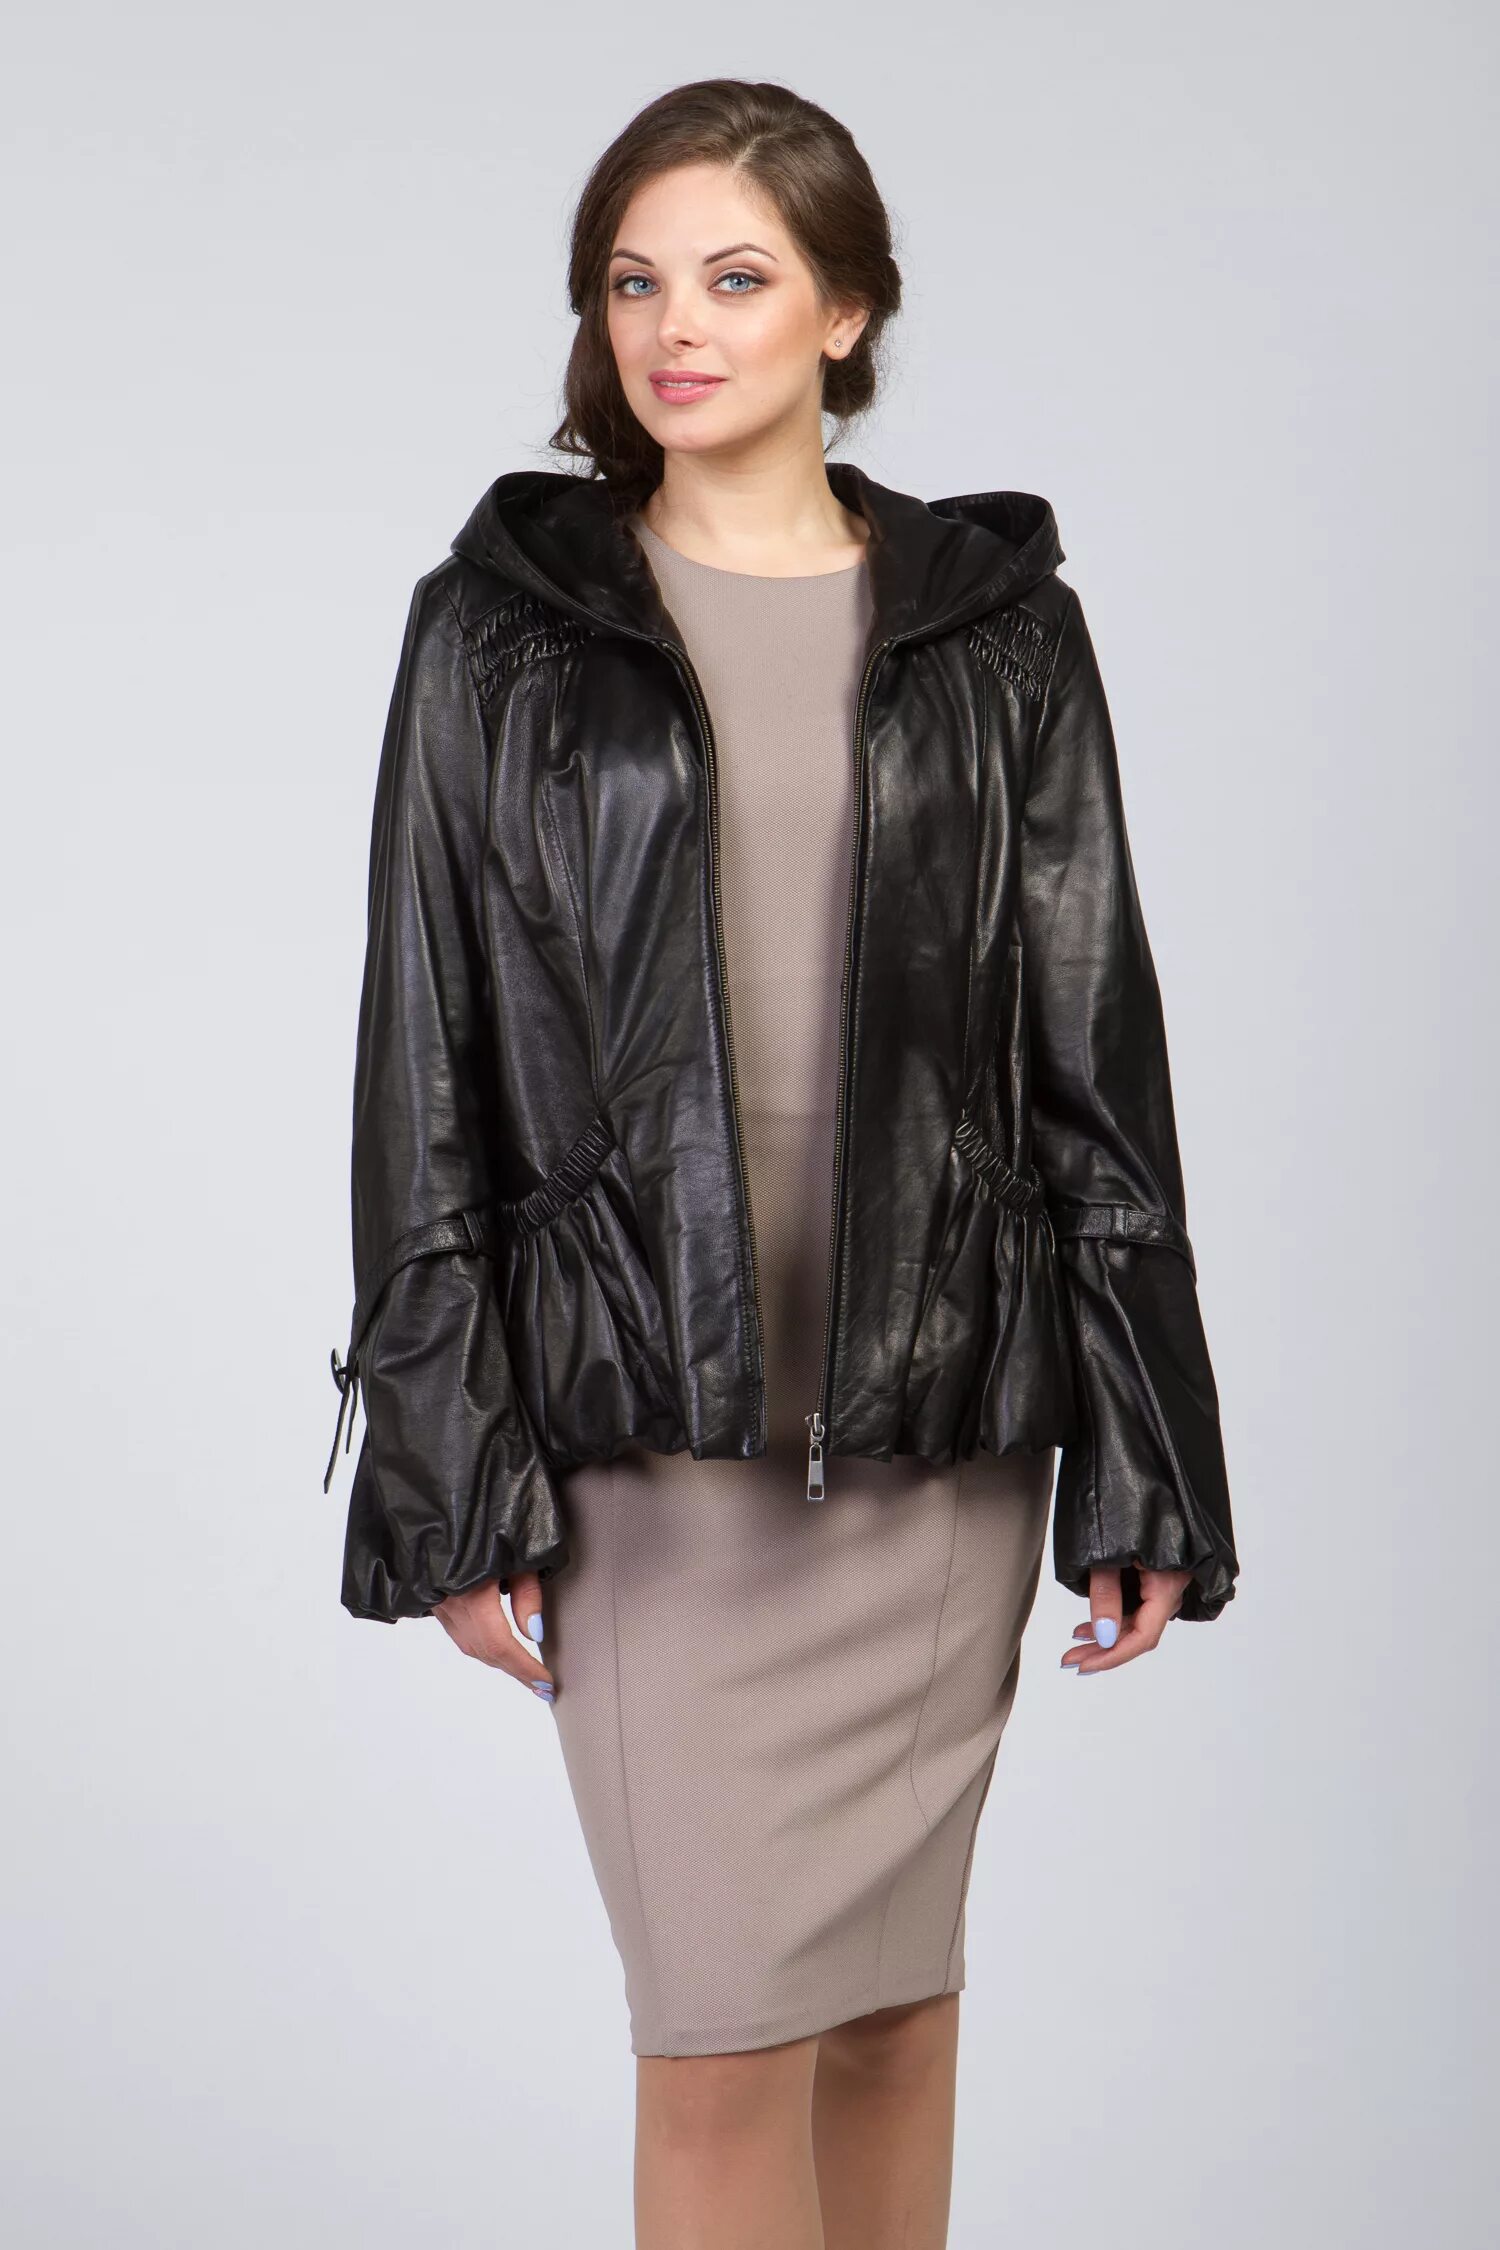 Утепленная кожаная куртка женская. Кожаная куртка большого размера. Кожаные куртки женские больших размеров. Турецкие кожаные куртки женские.